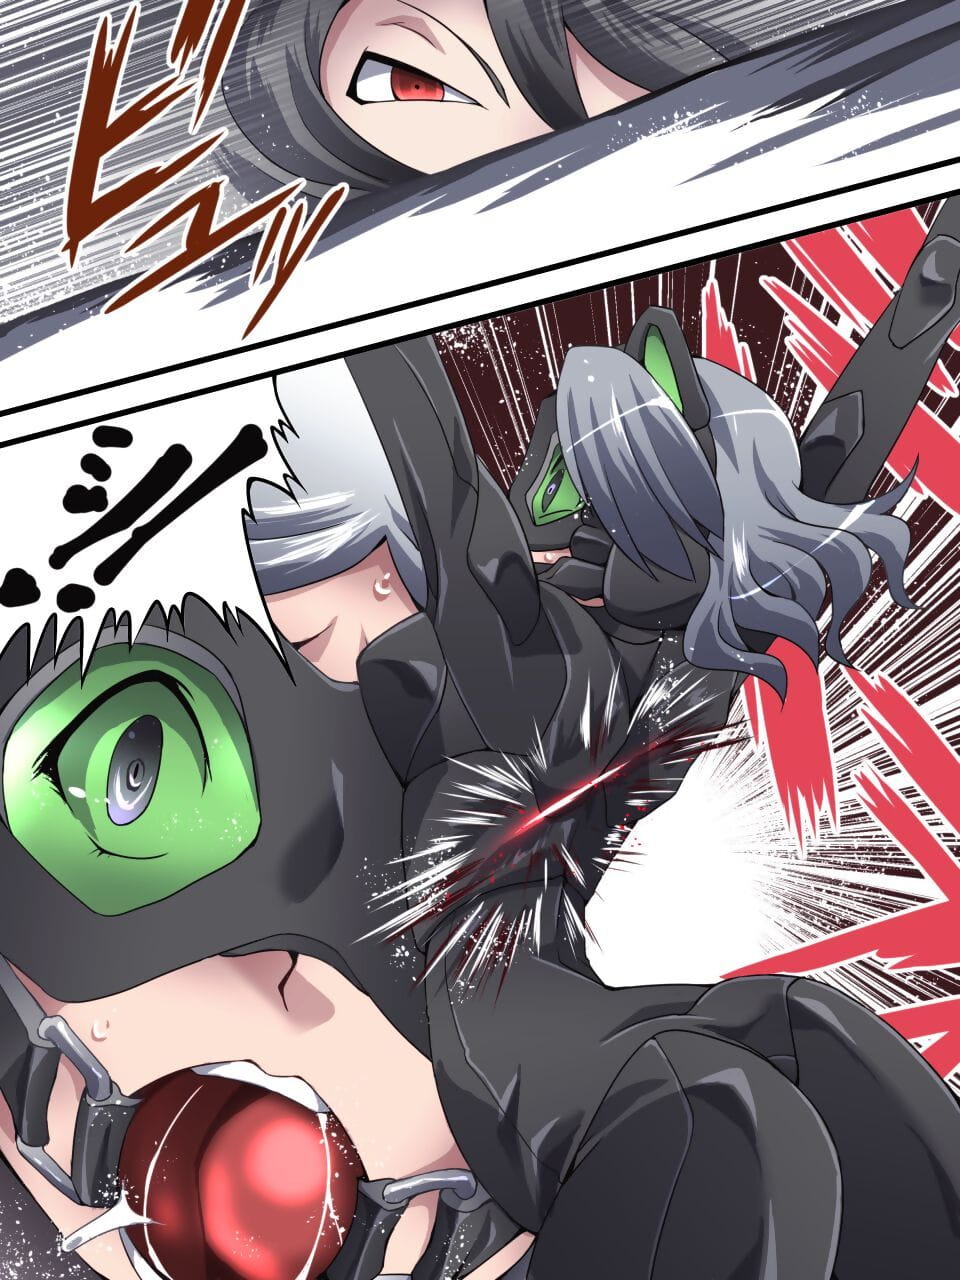 Kaitou Silver Cat Manga Ban Dai 2-wa page 1